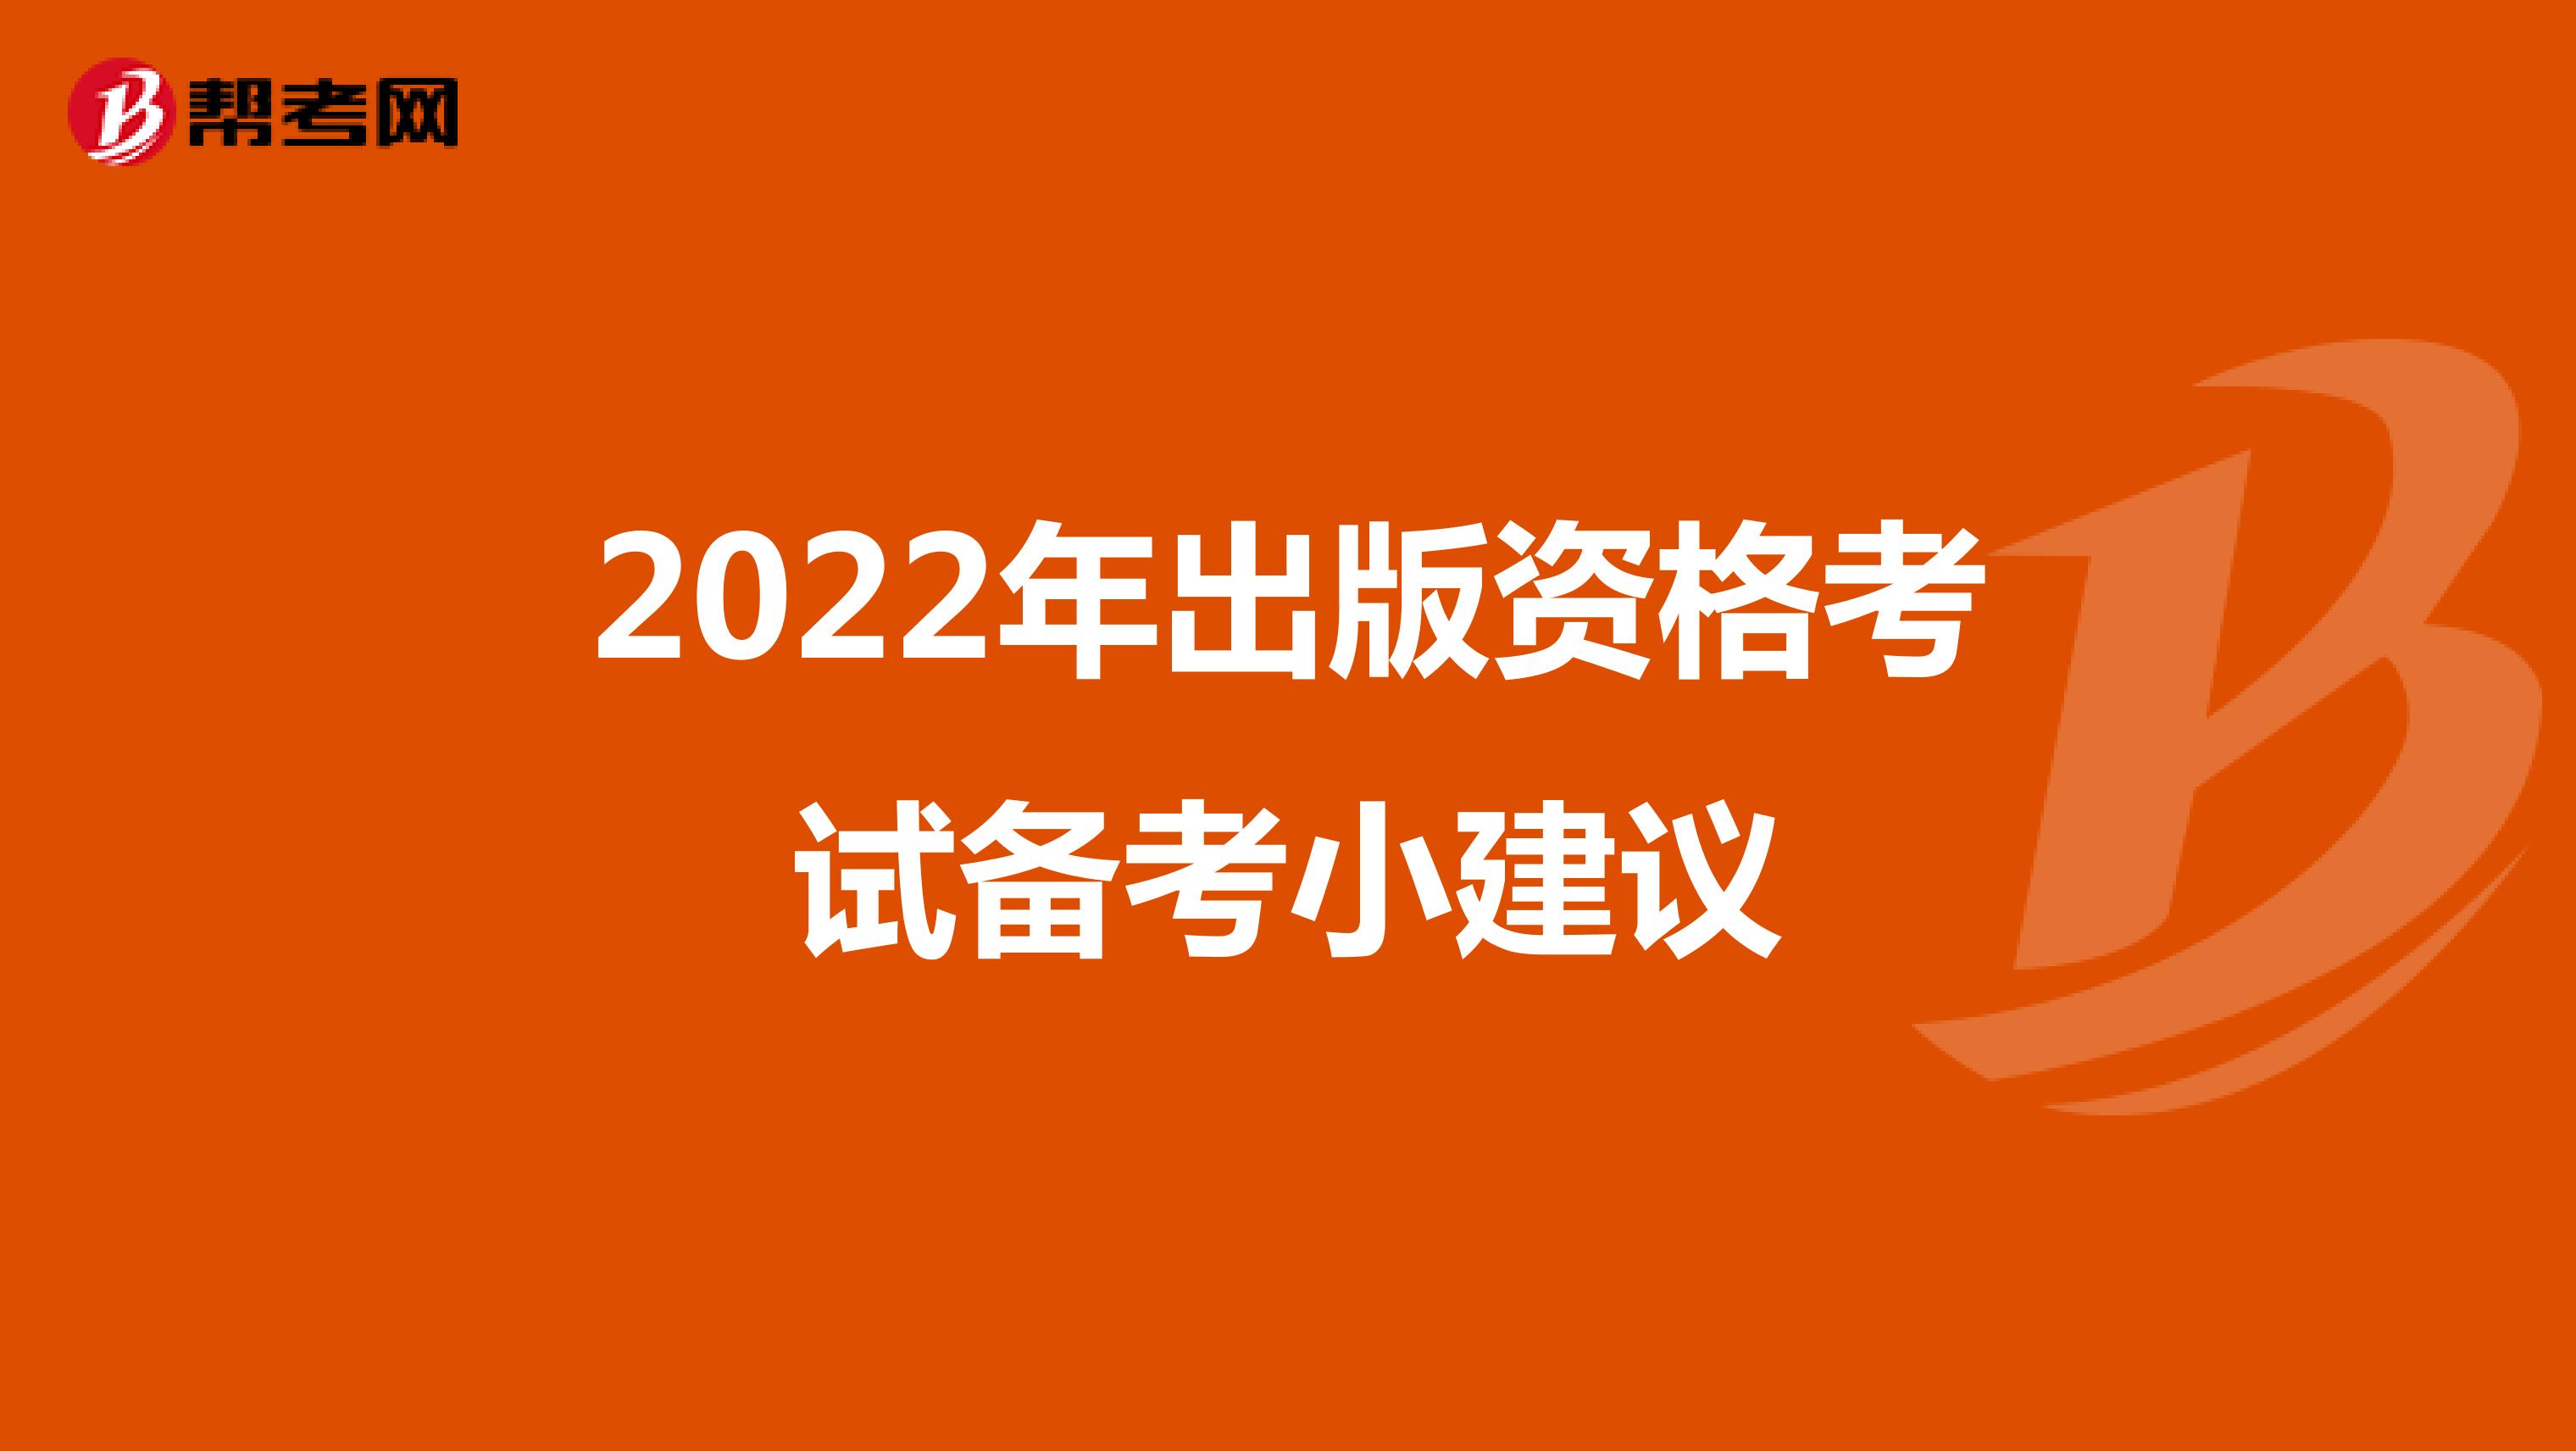 2022年出版资格考试备考小建议